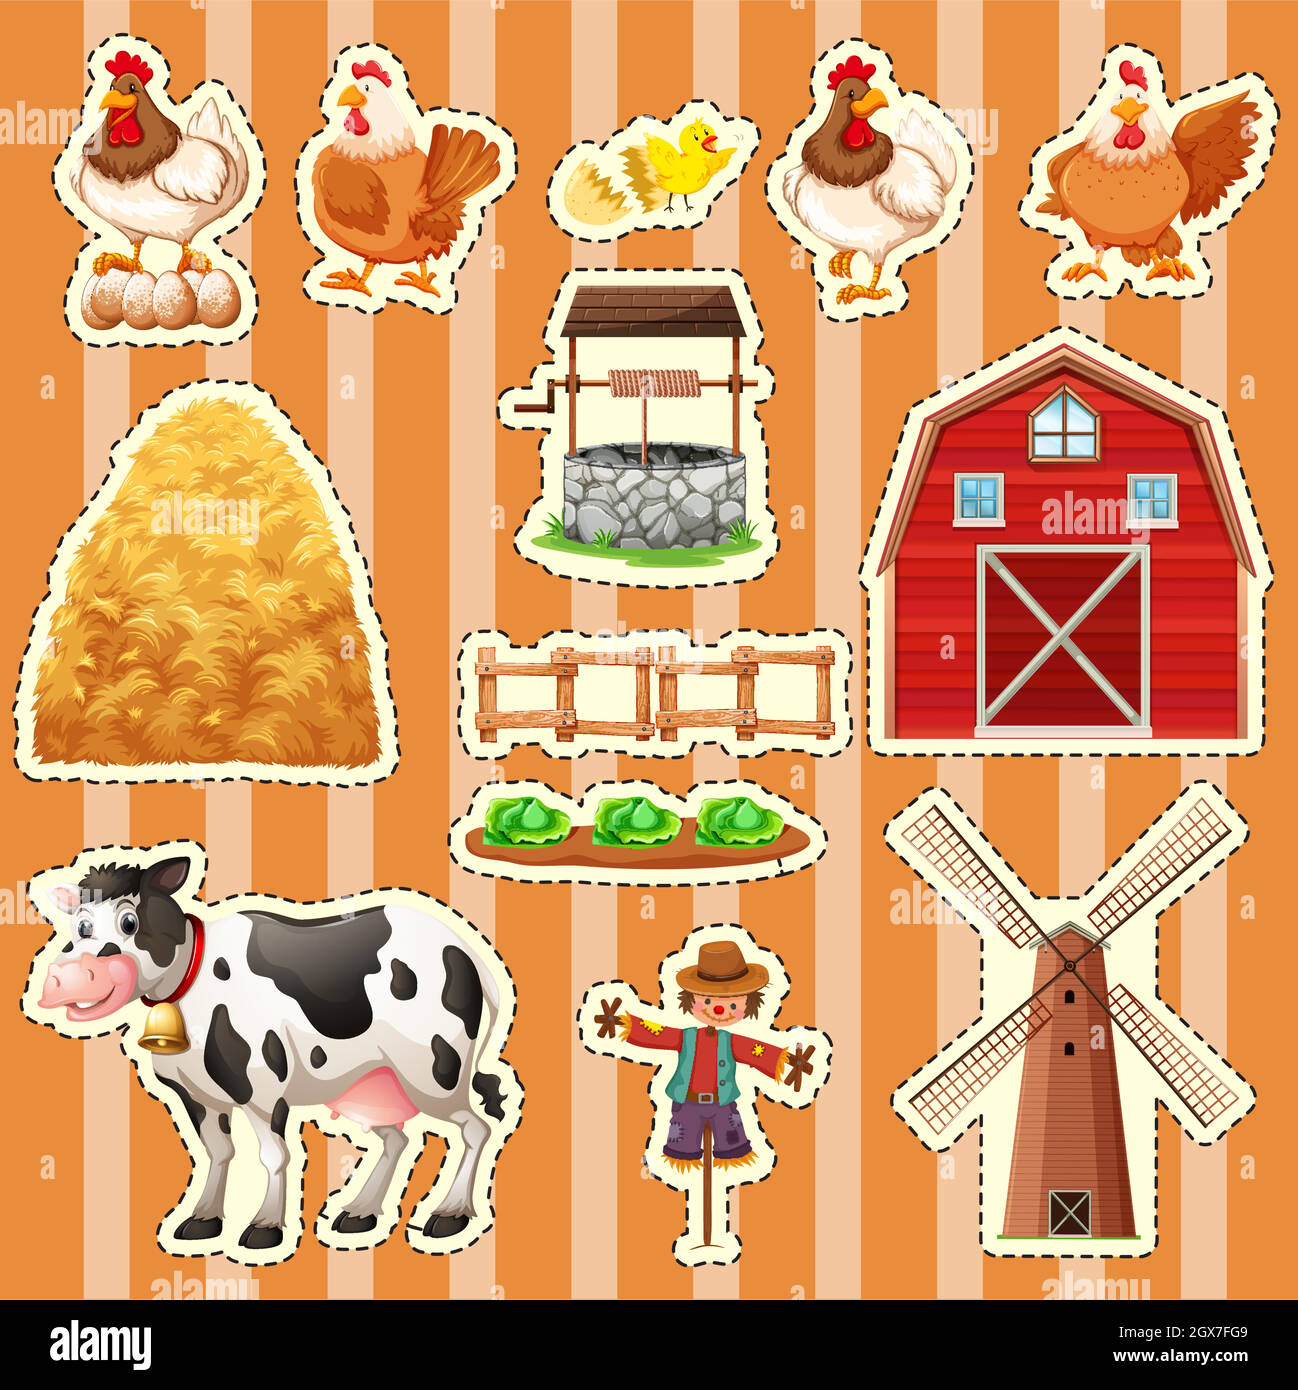 Sticker design for farm animals Stock Vector